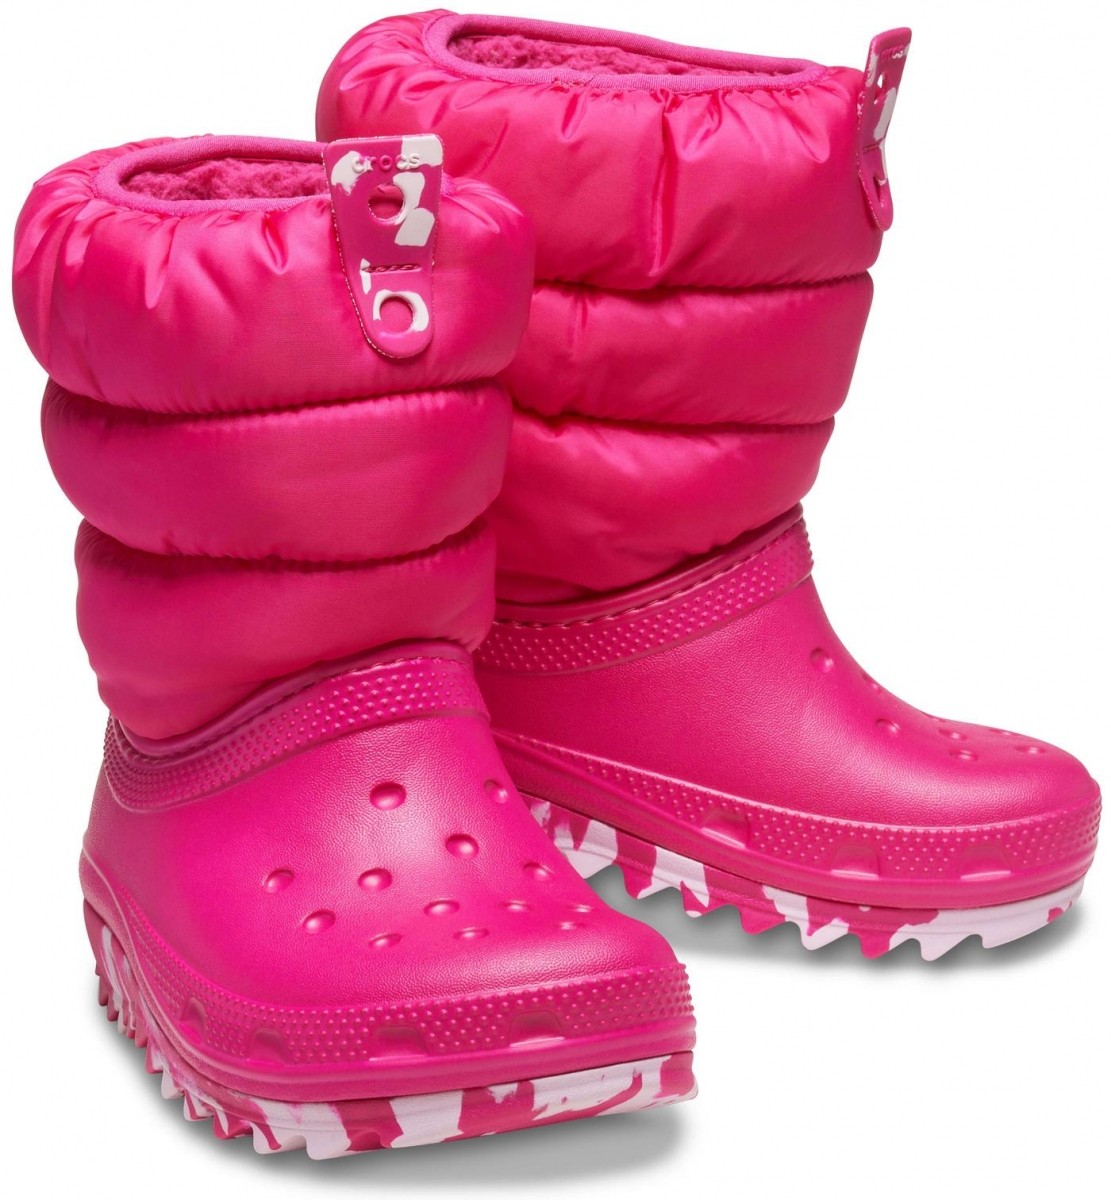 V teple a v suchu s novými sněhulemi Crocs Classic Neo Puff Boot Kids!